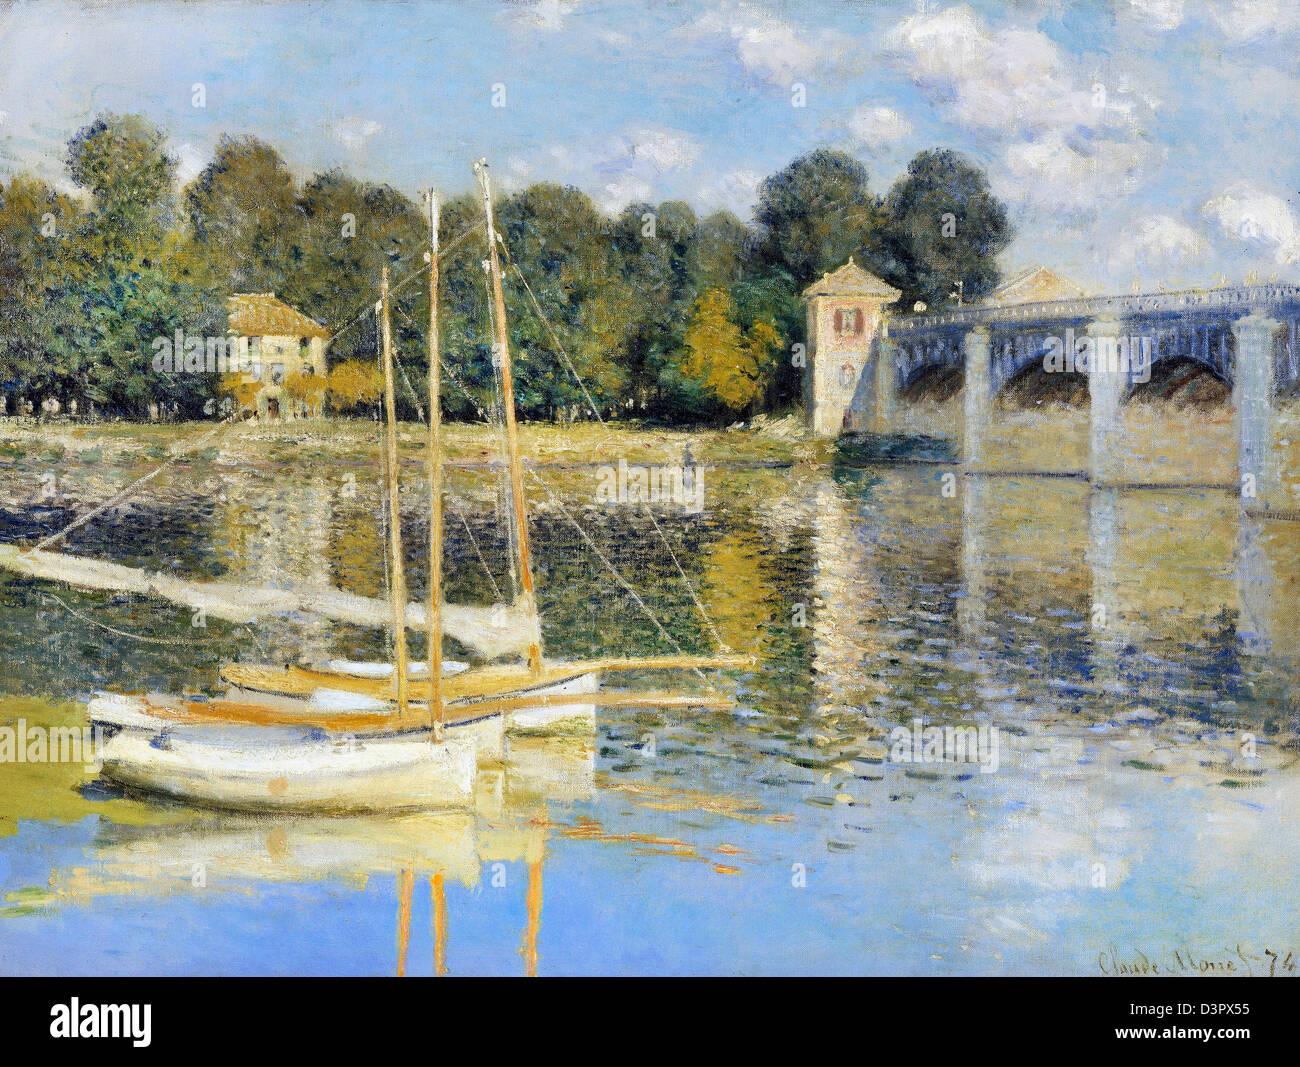 Claude Monet, le pont d'Argenteuil 1874 Huile sur toile. Musée d'Orsay, Paris, France Banque D'Images